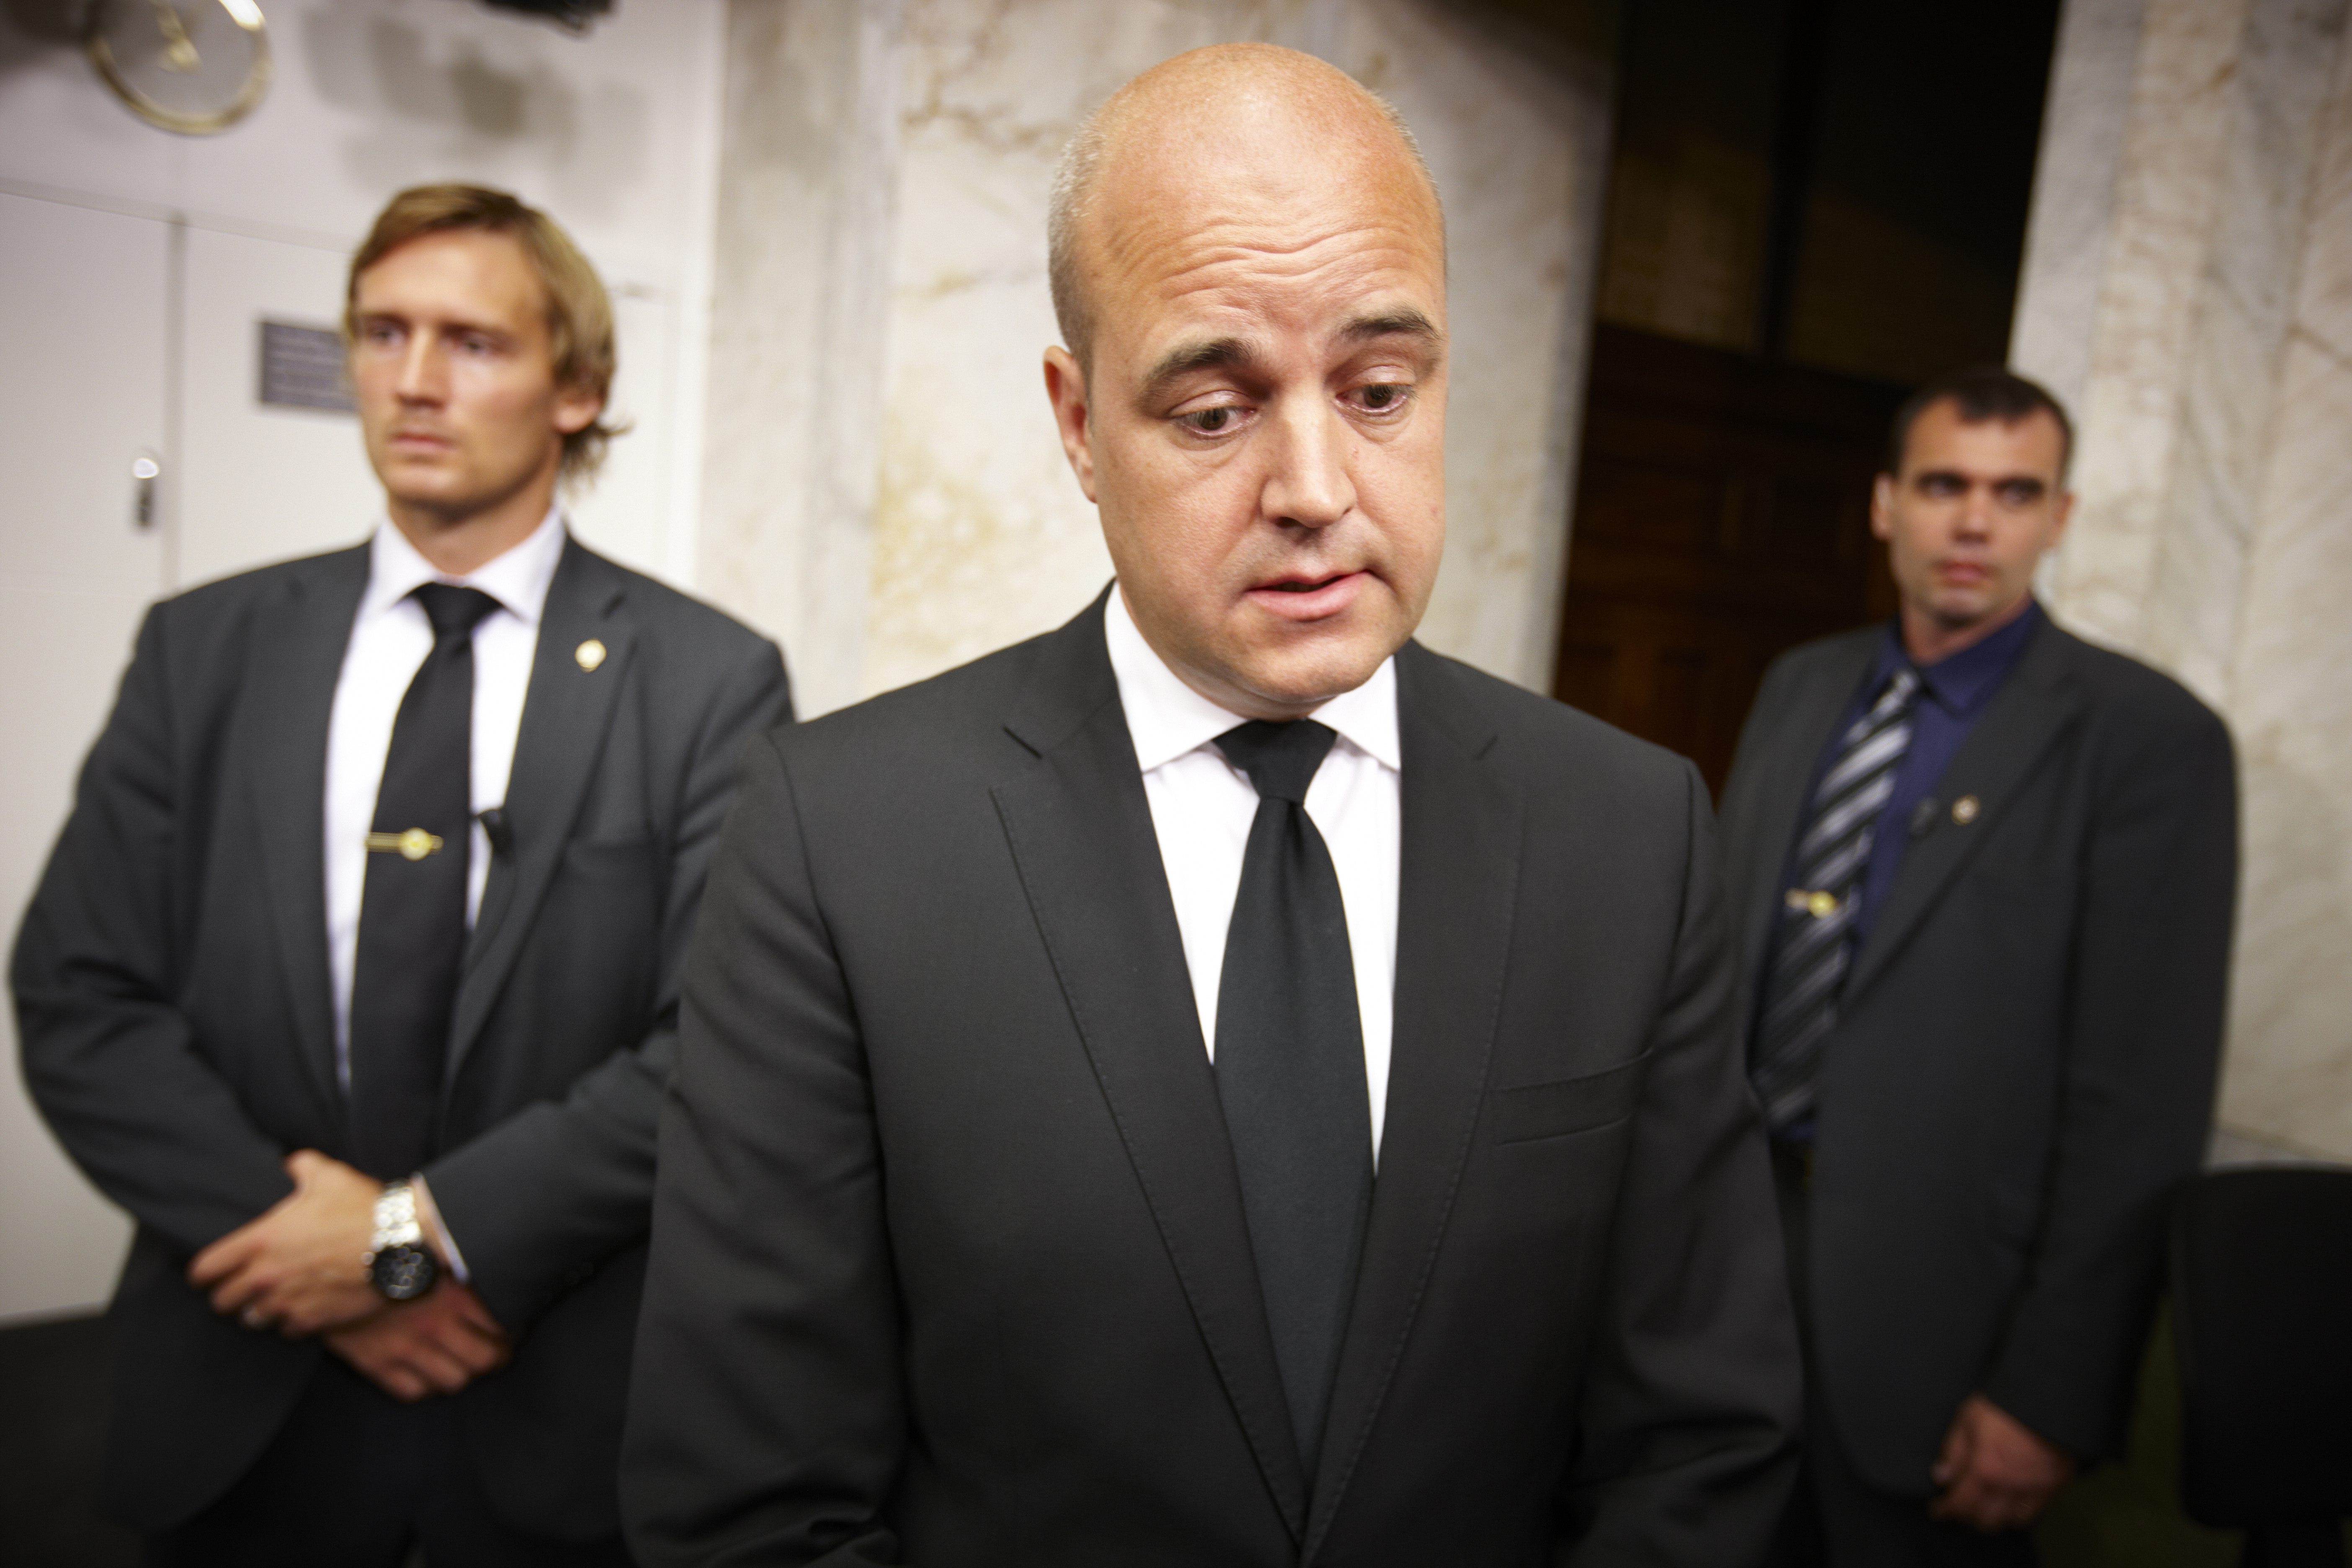 Statsminister Reinfeldt:
- Europa har levt över sina tillgångar.